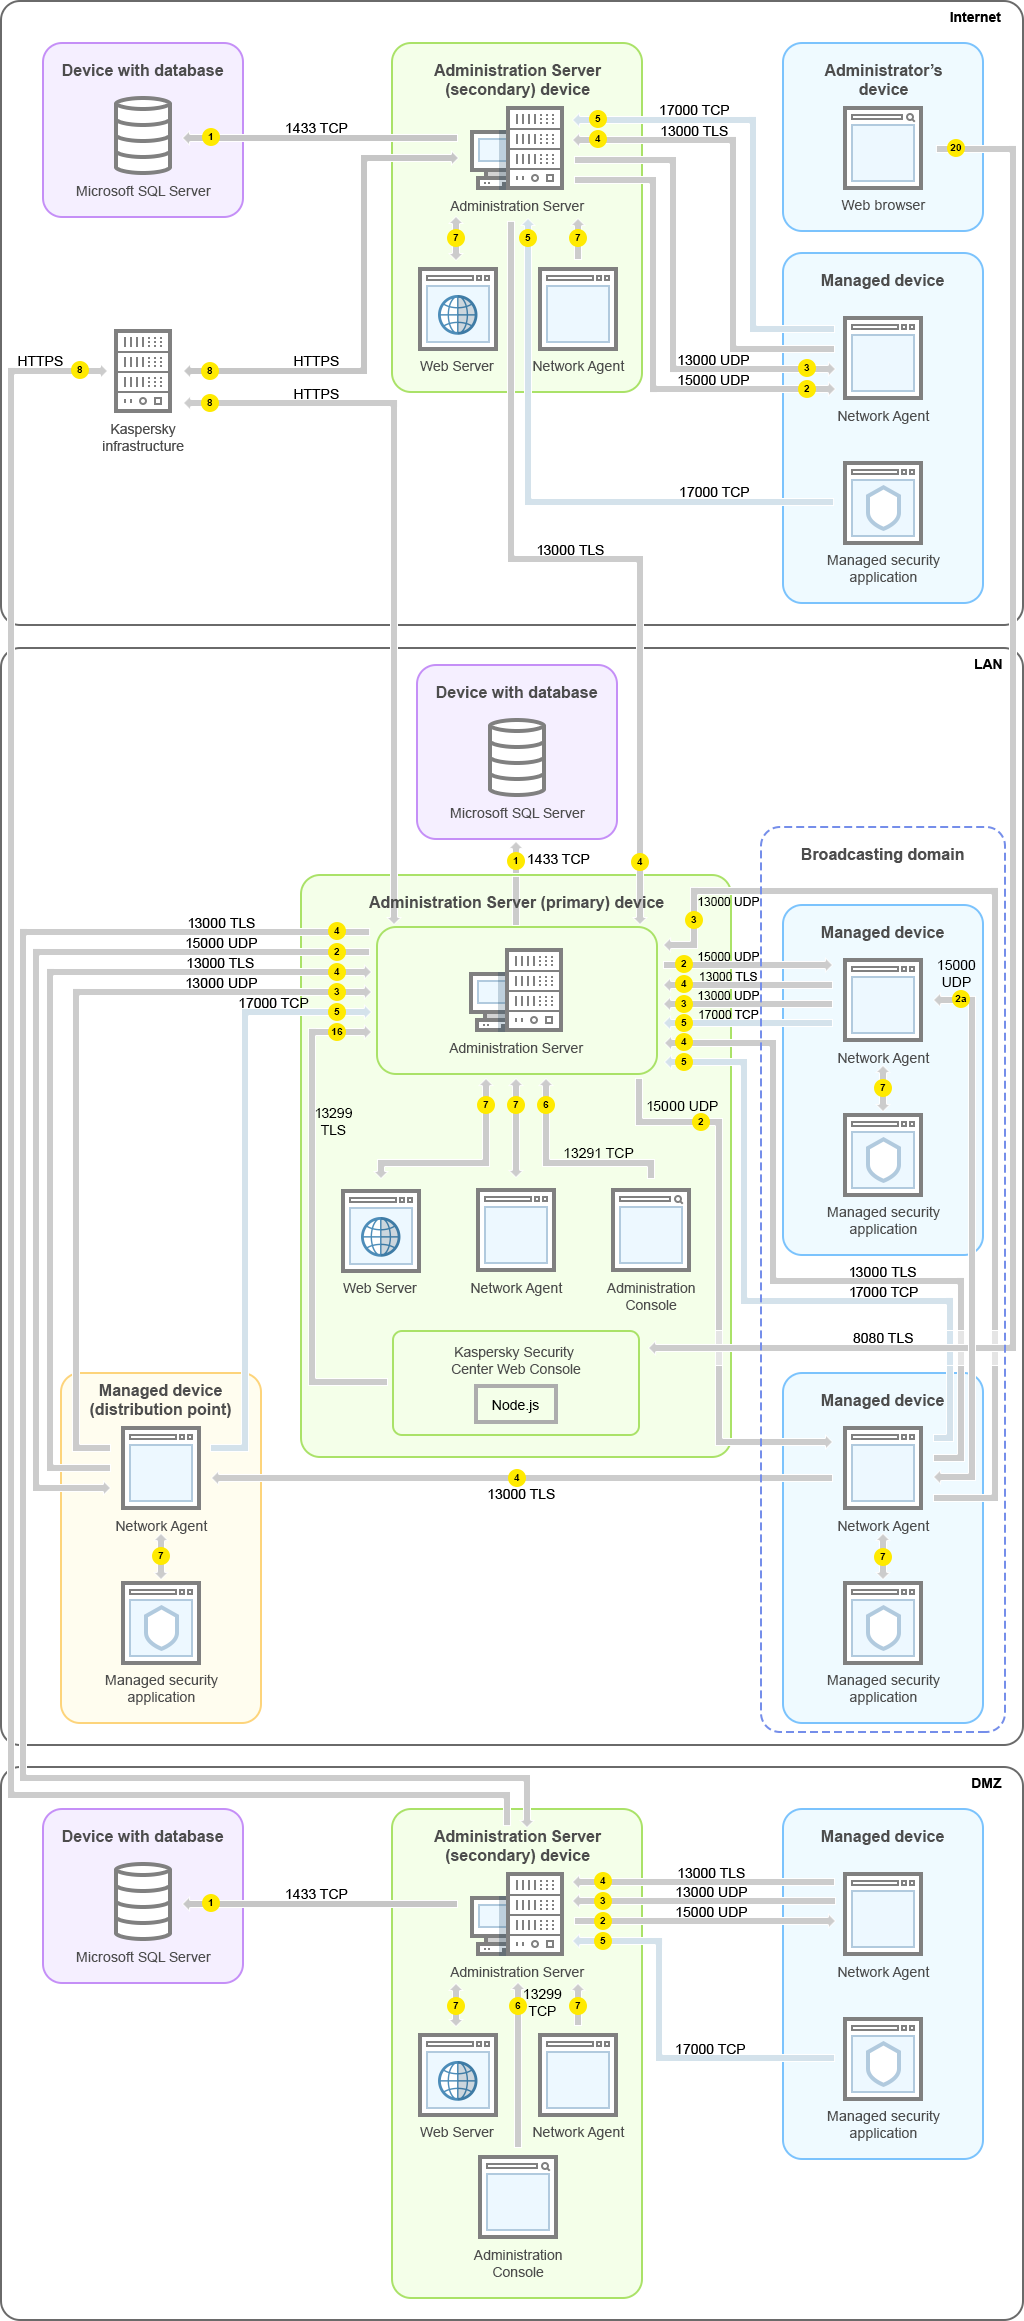 기본 중앙 관리 서버와 여기서 관리 중인 장치는 LAN에 있고, 보조 중앙 관리 서버와 여기서 관리 중인 장치는 DMZ에 있으며, 또 다른 보조 중앙 관리 서버와 여기서 관리 중인 장치, 그리고 관리자 장치는 인터넷에 있습니다.